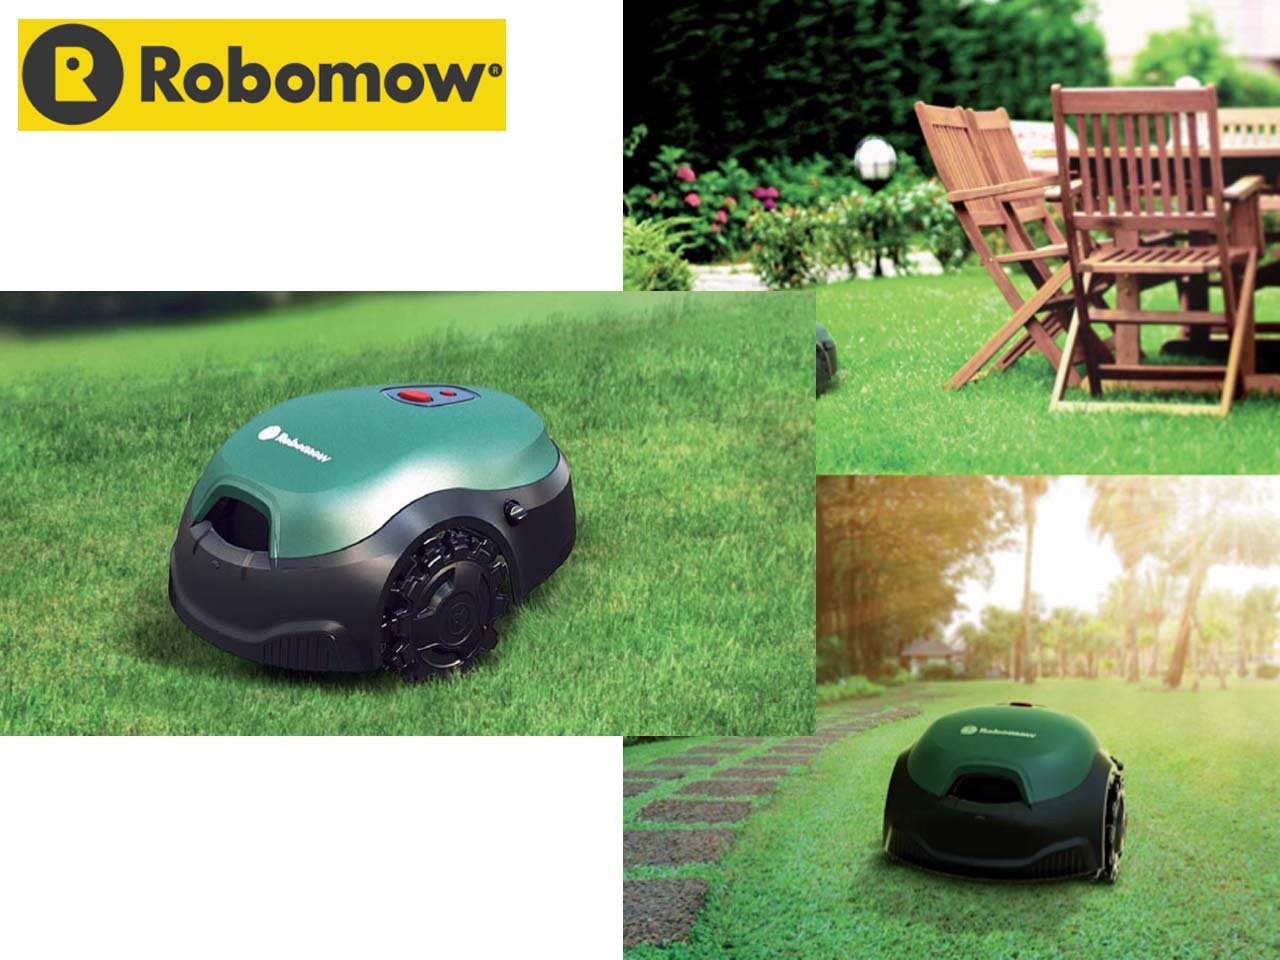 Robomow arrive avec une nouvelle génération de robots de tonte tout-terrain : le RT et RK Robomow